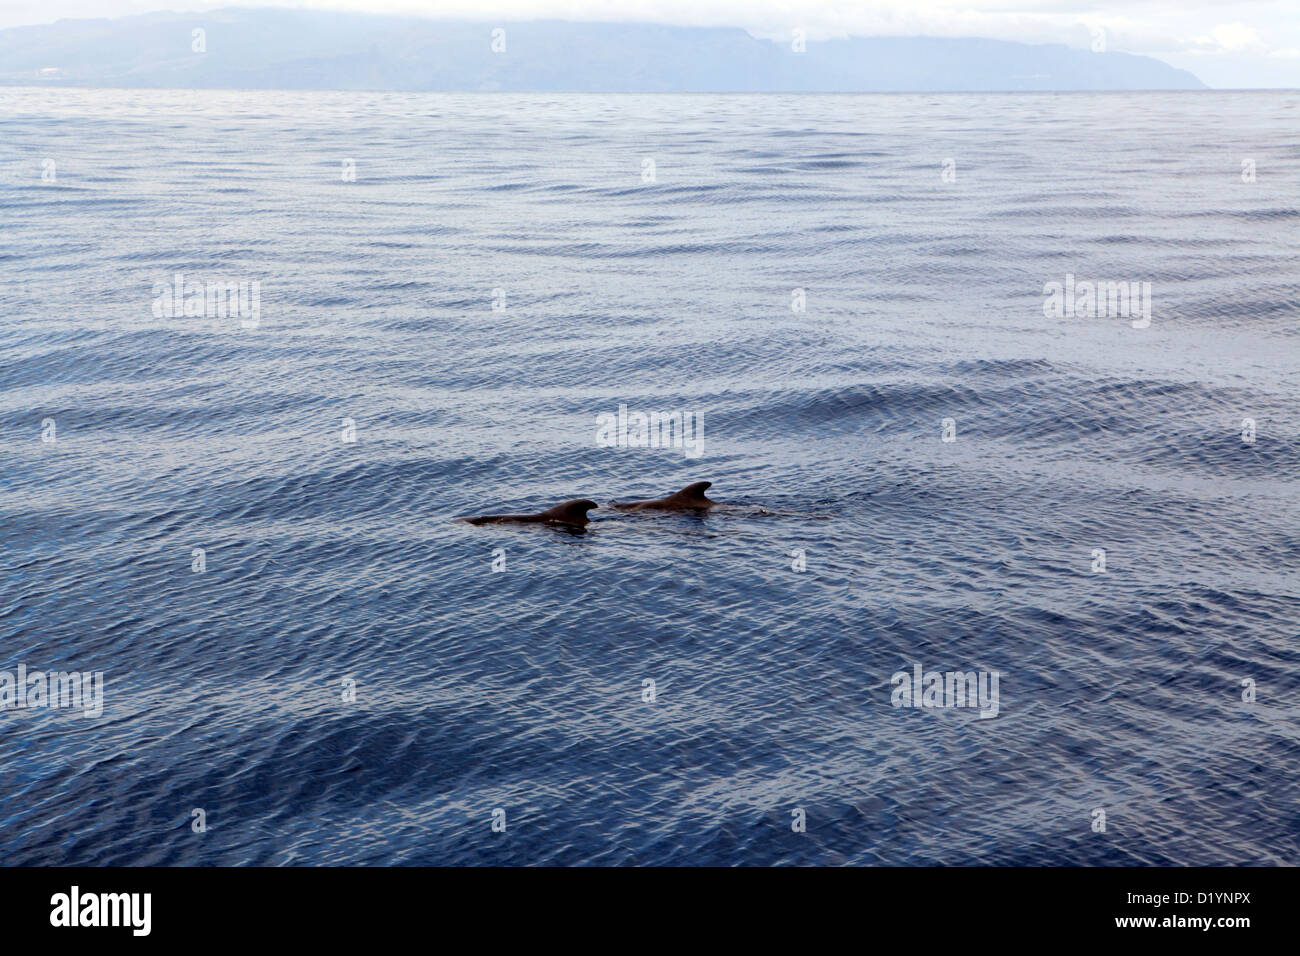 Paar von Grindwalen schwimmen in das ruhige blaue Meer aus Teneriffa, Kanarische Inseln, Whale-watching Bootsfahrt Stockfoto